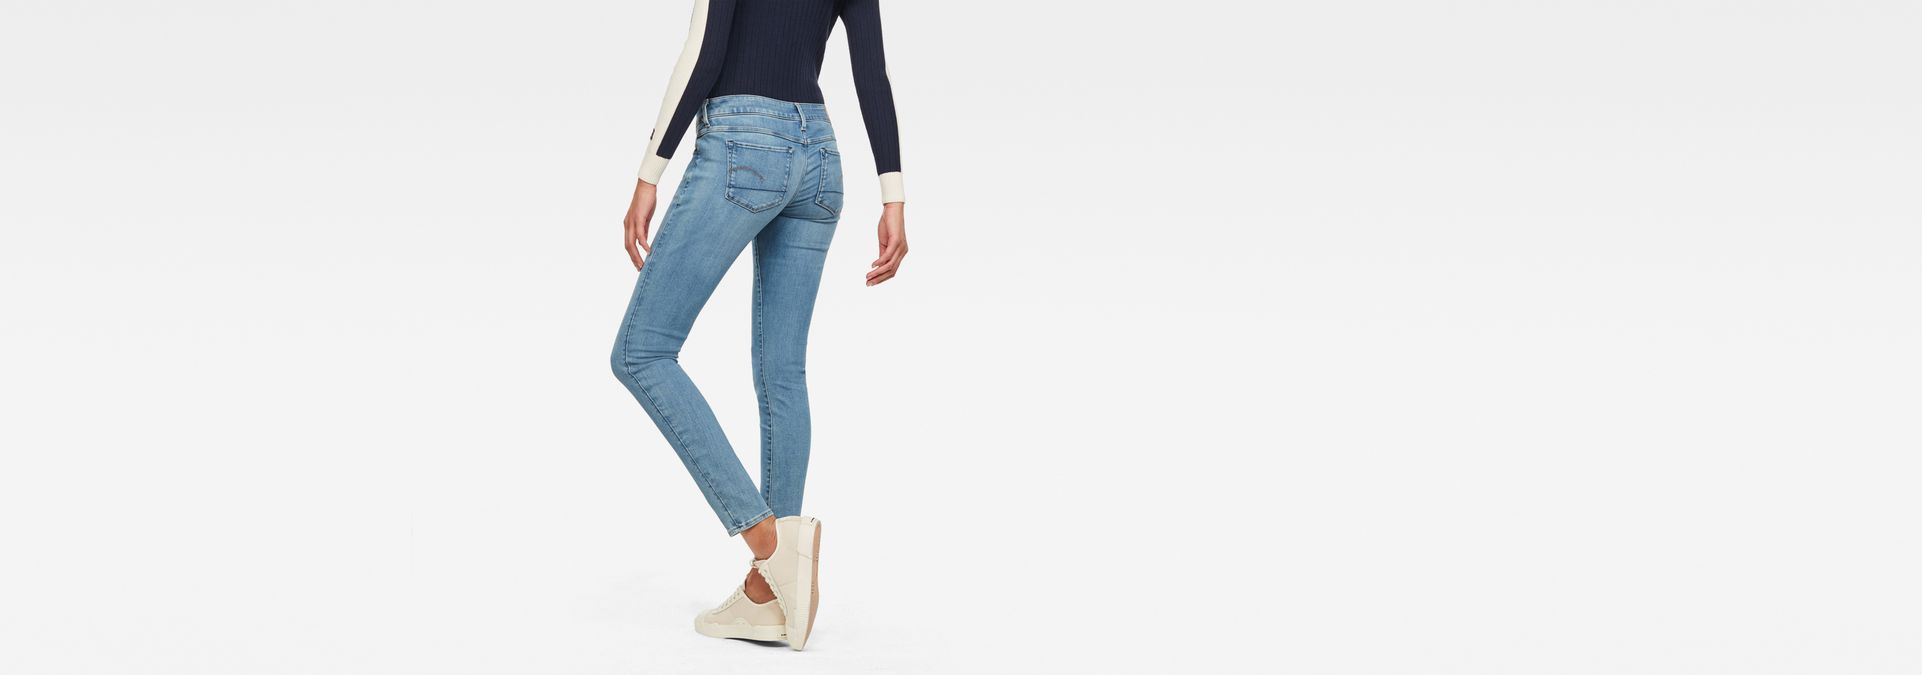 slim low waist jeans